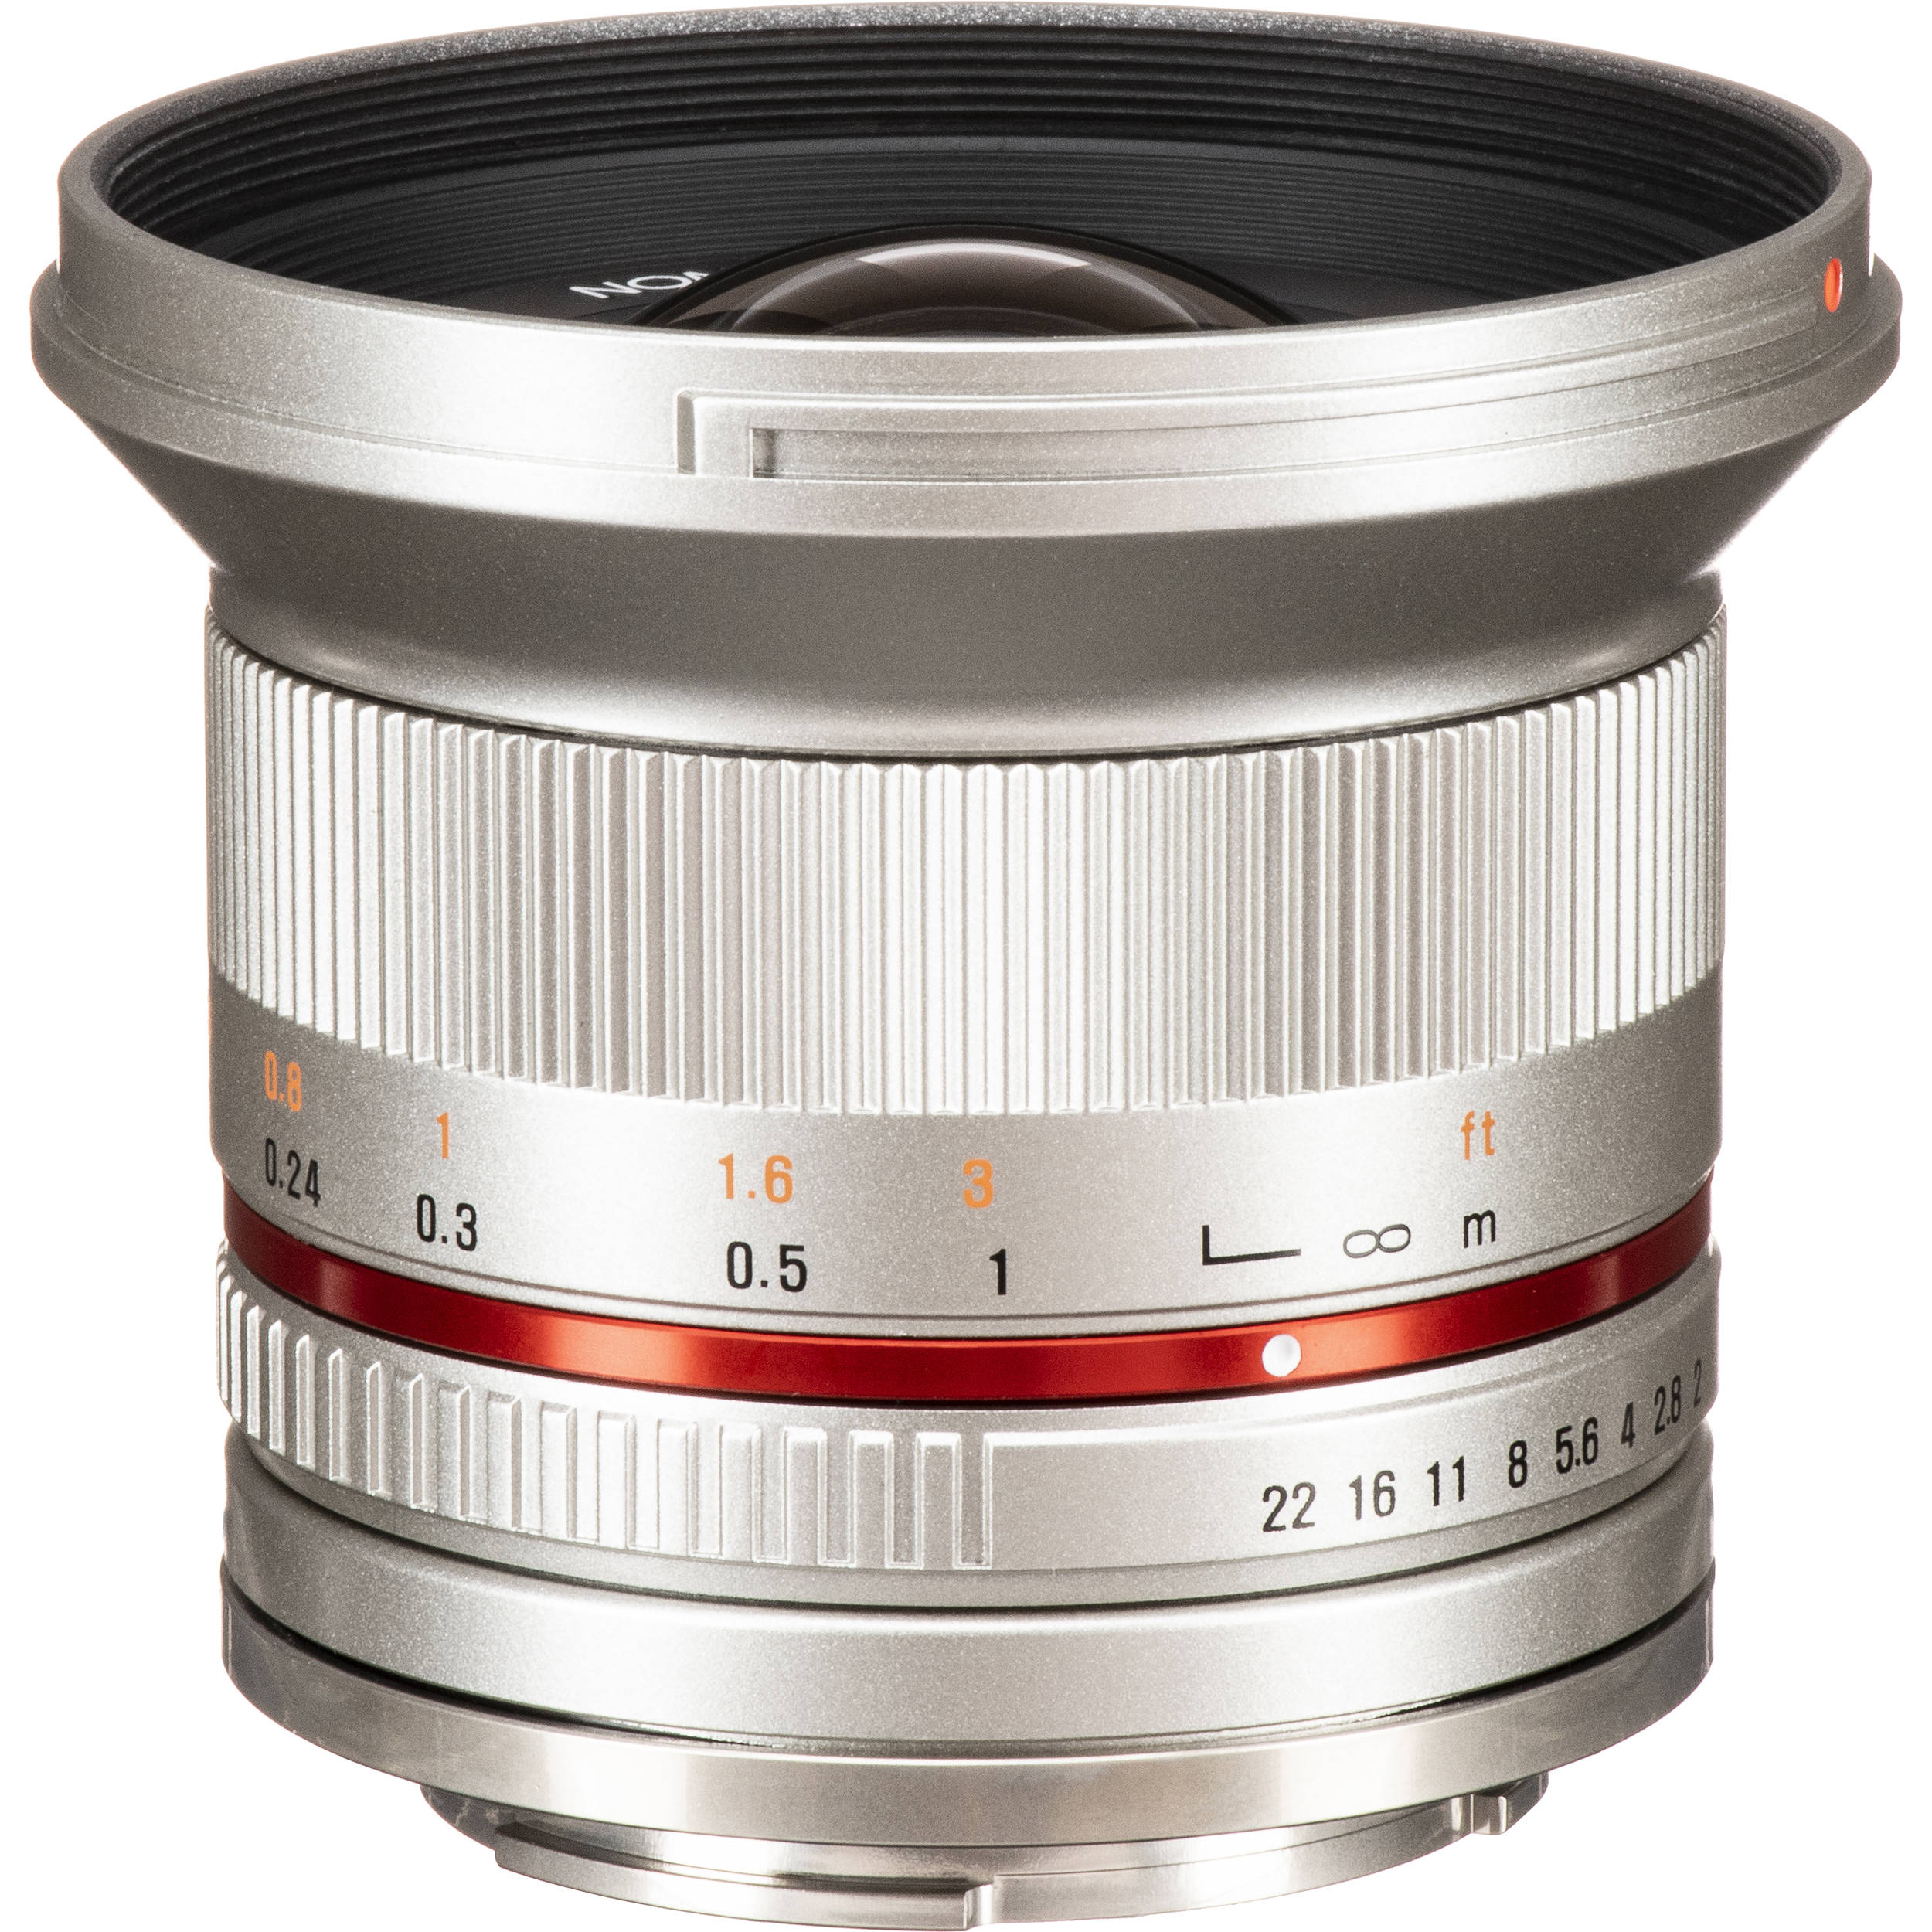 Rokinon 12mm F 2 0 Ncs Cs Lens For Sony E Mount Rk12m E Sil B H